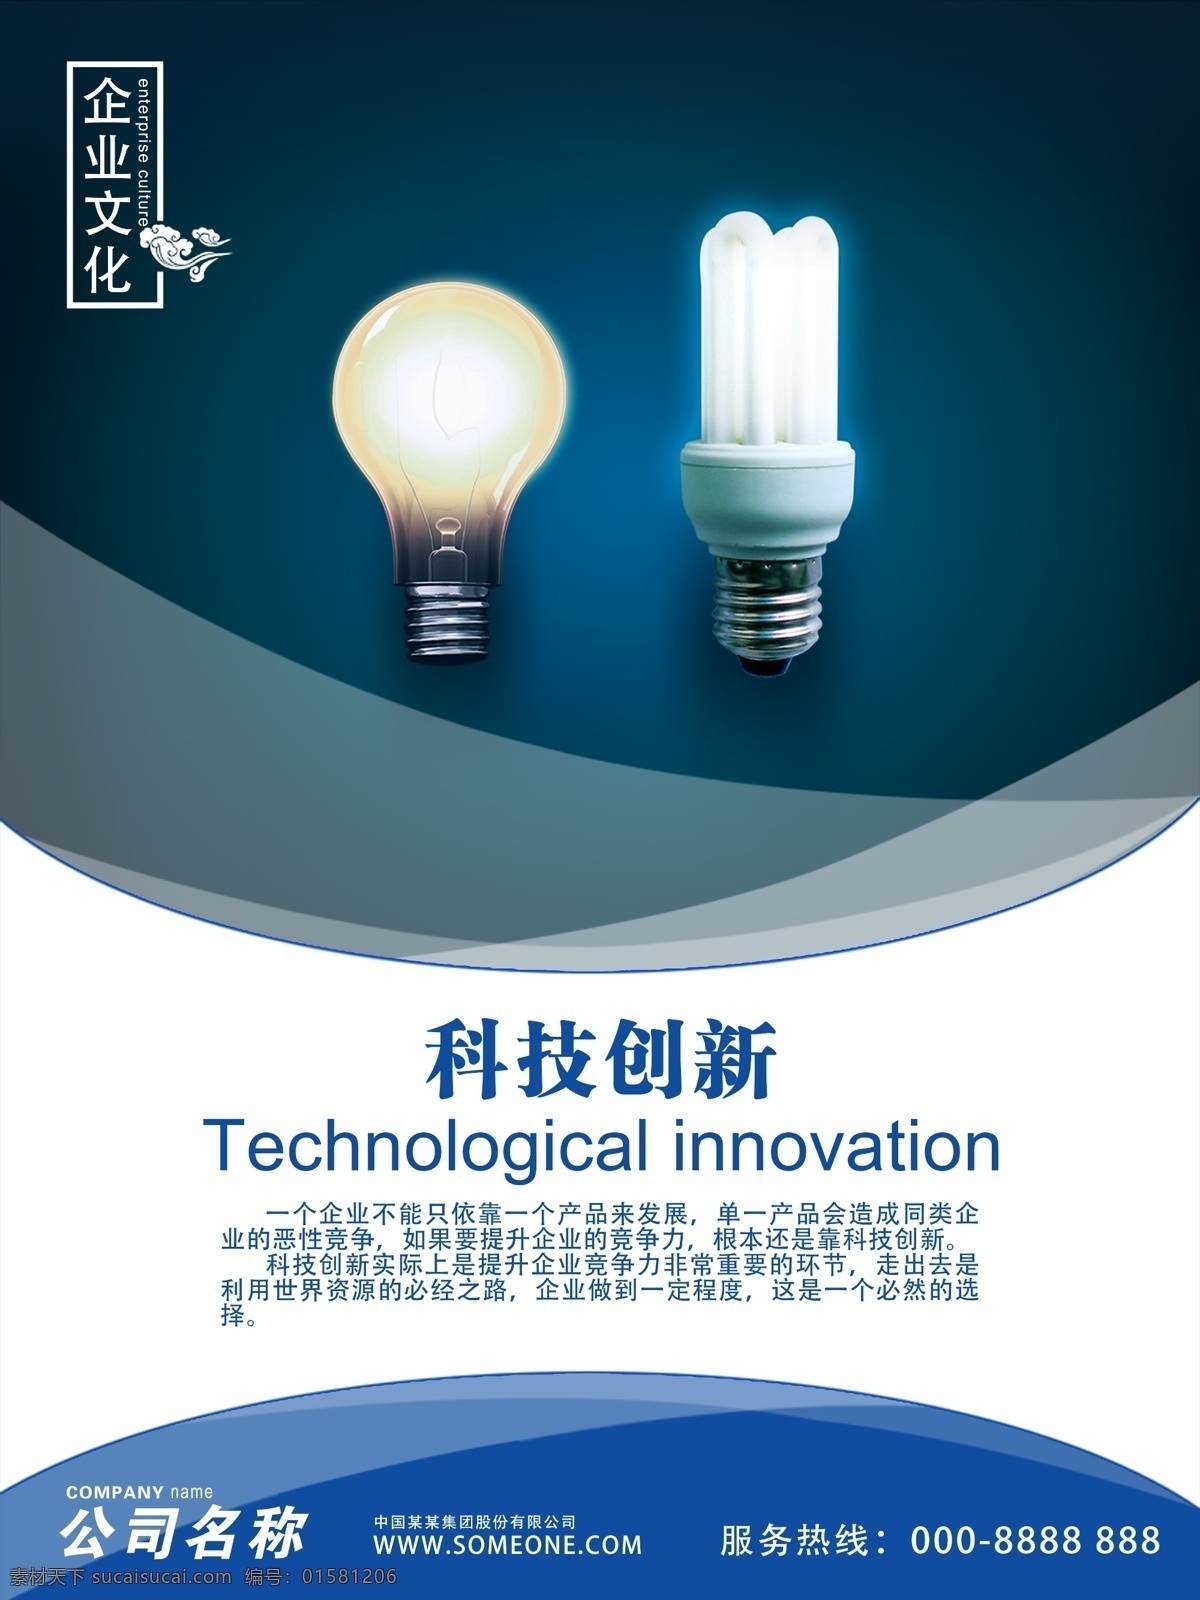 企业 文化 科技创新 企业文化 公司文化 科技 创新 灯泡 展板模板 海报模板